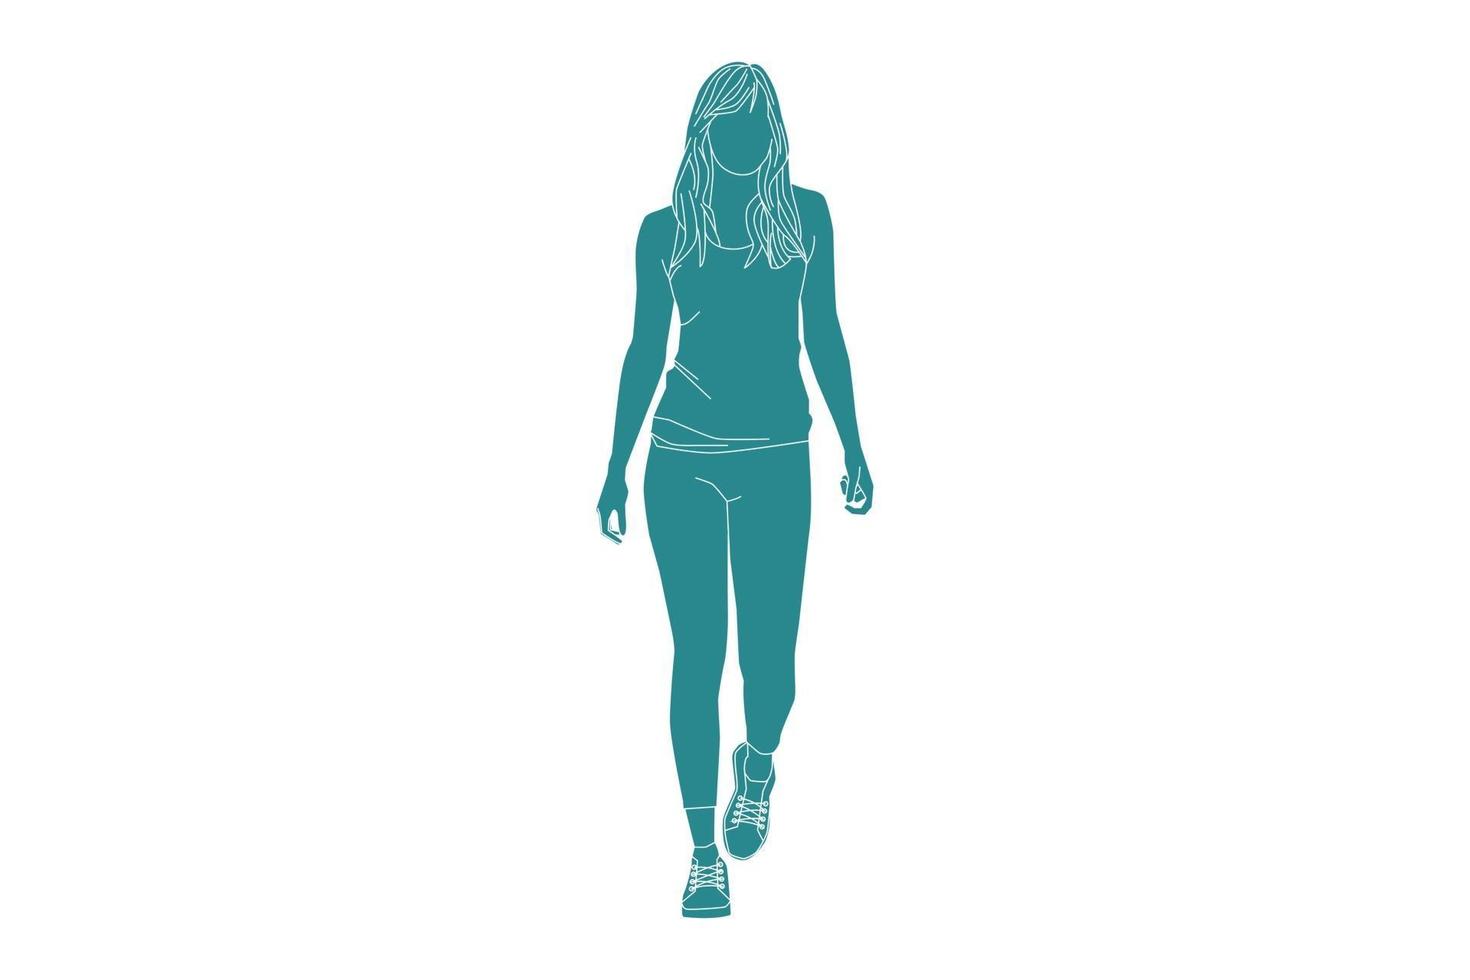 vektorillustration av avslappnad kvinna som går på sidokanten, platt stil med konturer vektor